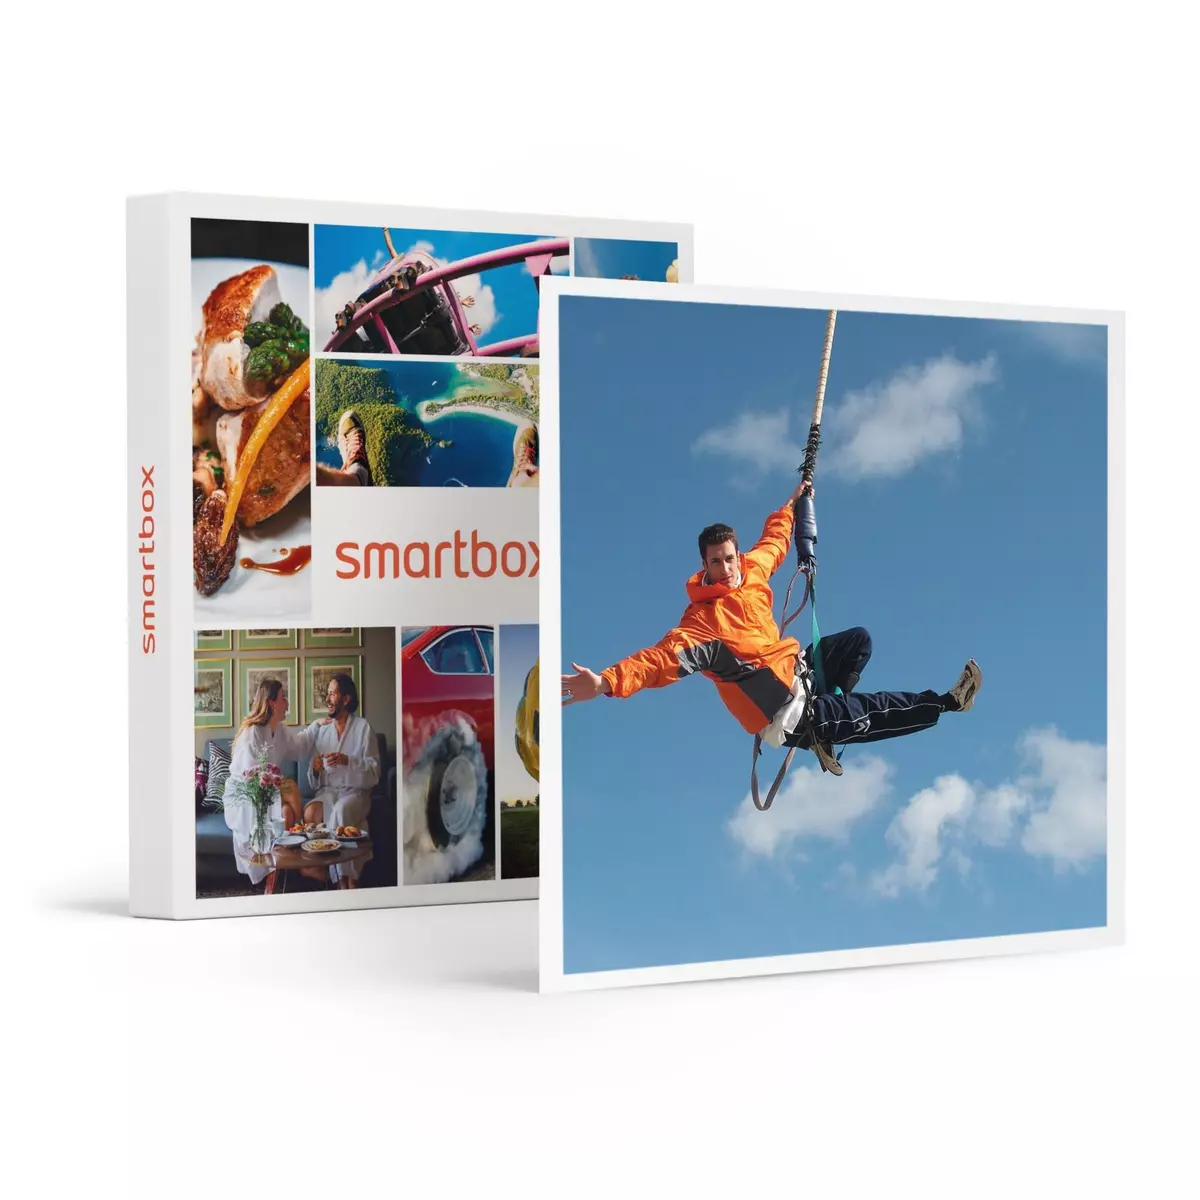 Smartbox 2 sauts à l'élastique au viaduc de Saint-Georges-le-Gaultier avec certificat et souvenir - Coffret Cadeau Sport & Aventure